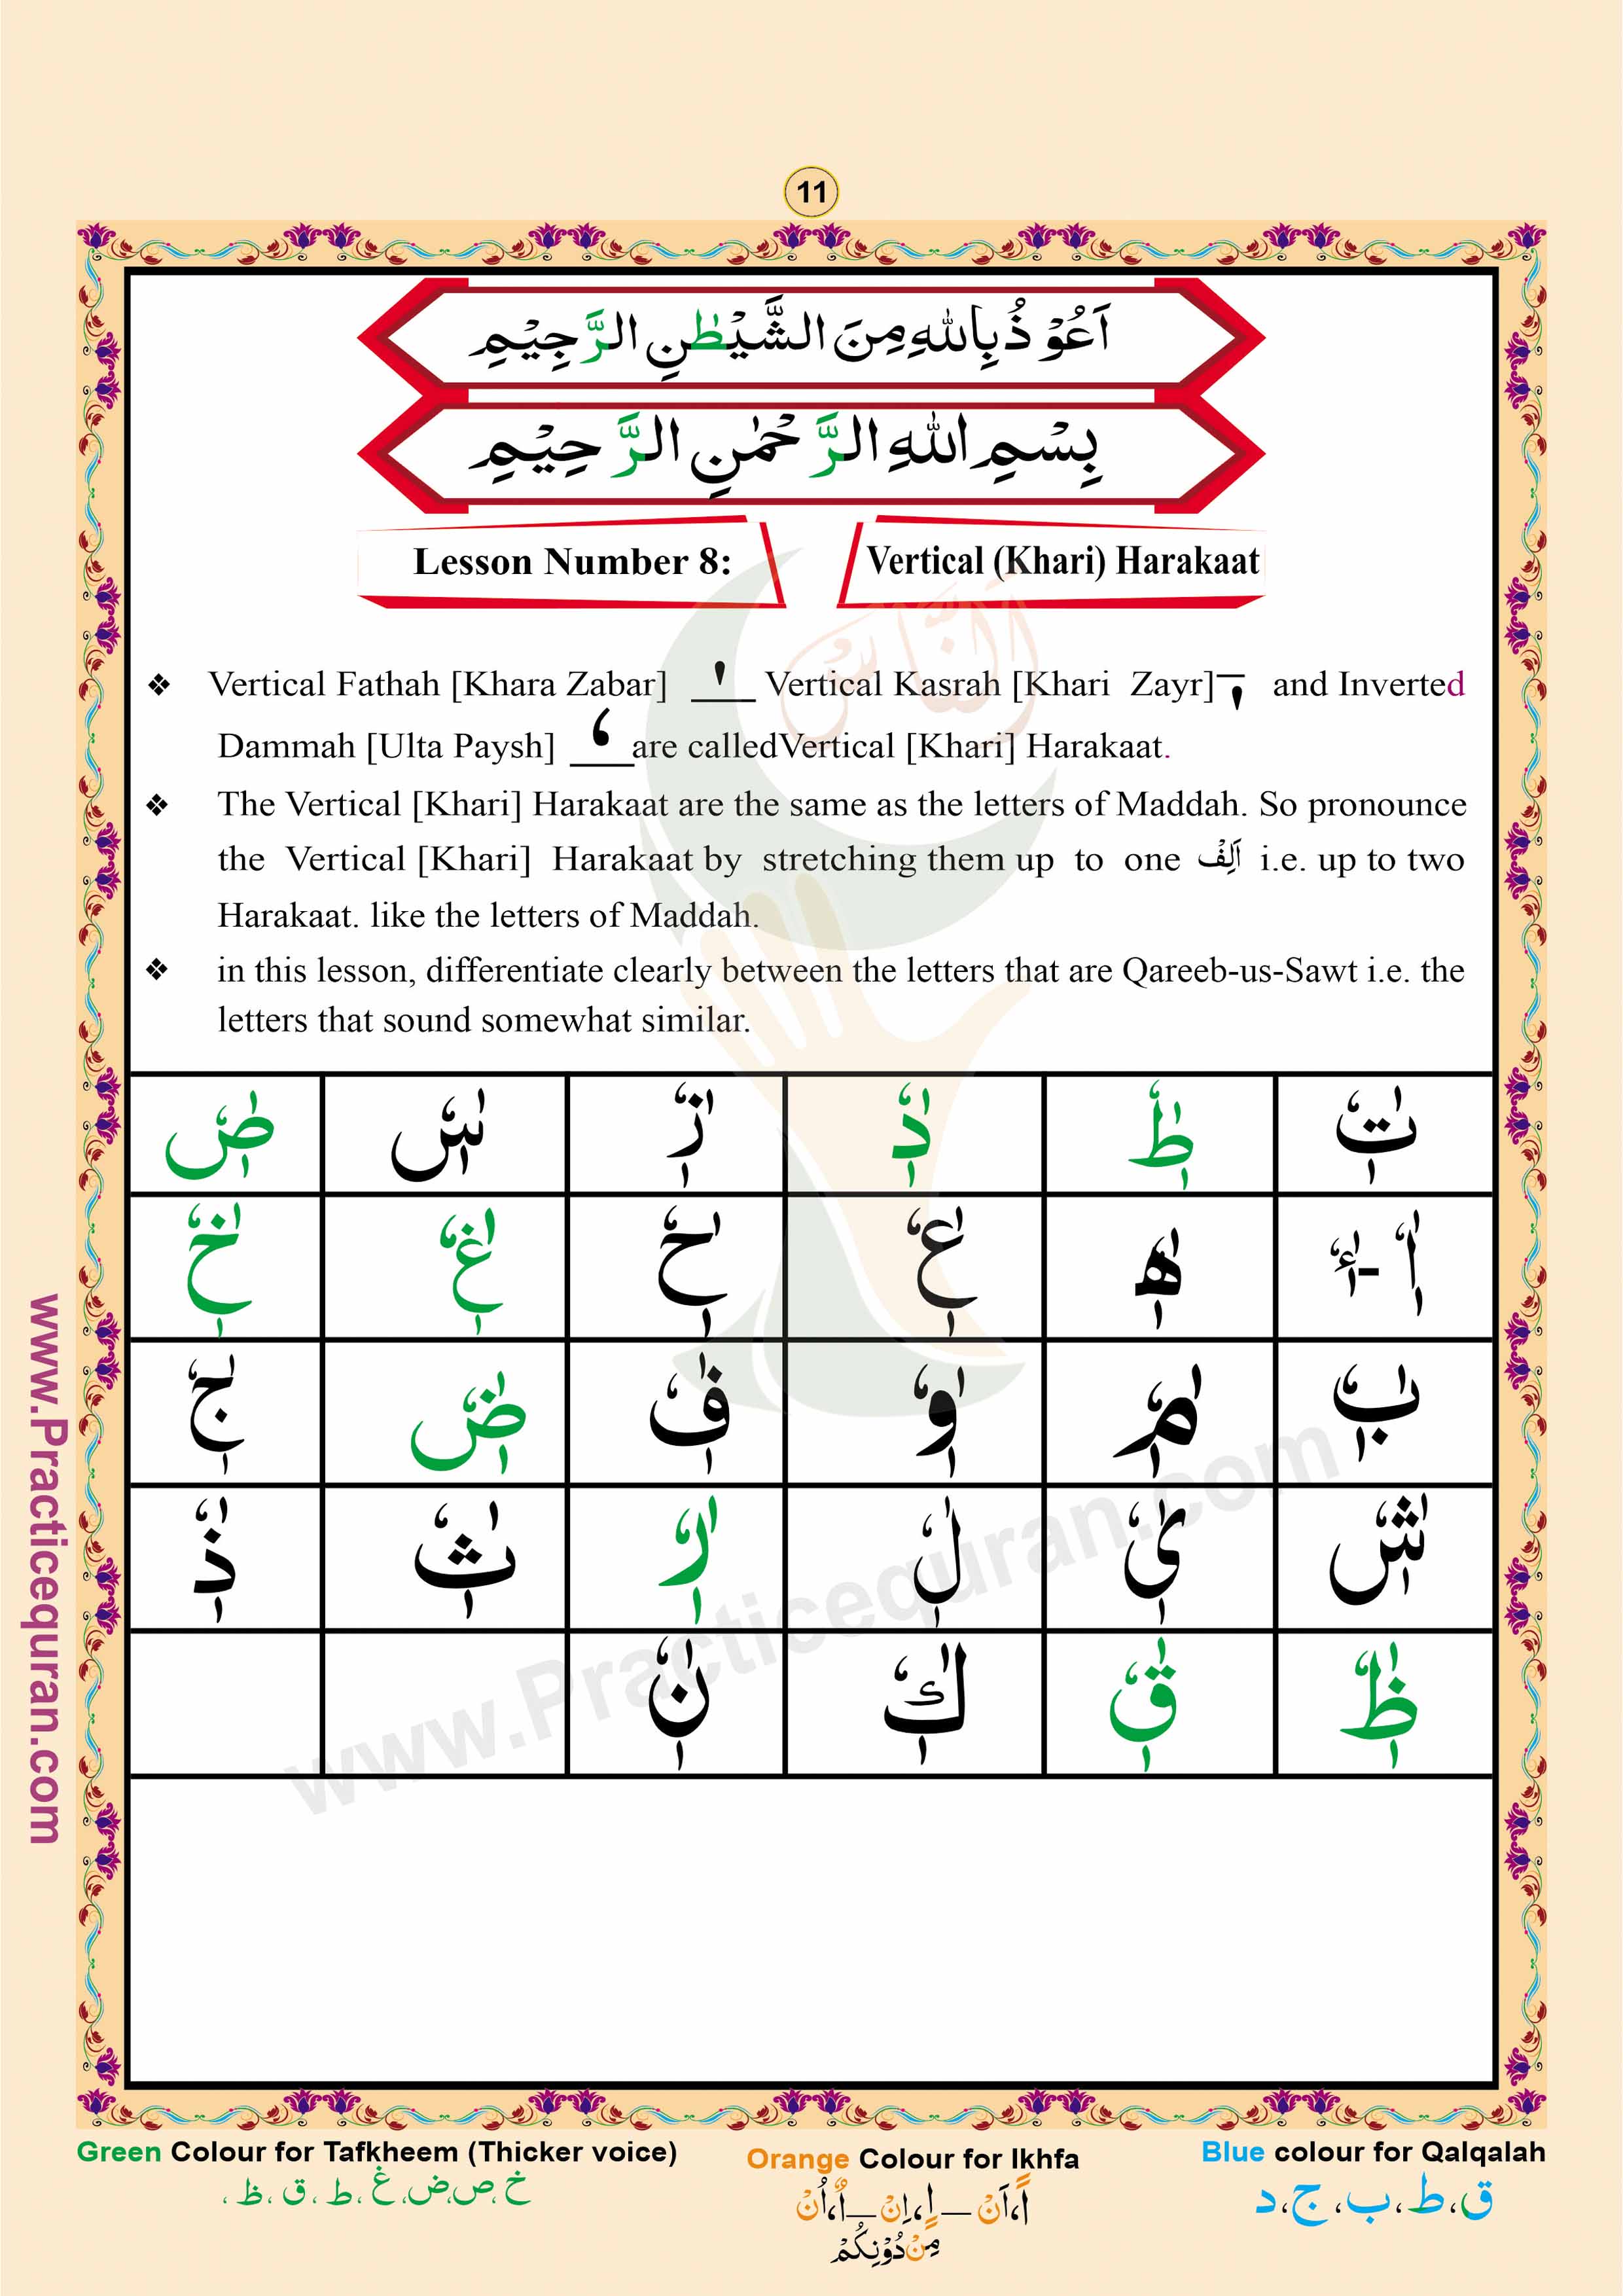 Read English Noorani Qaidah Page No 11, Practice Quran